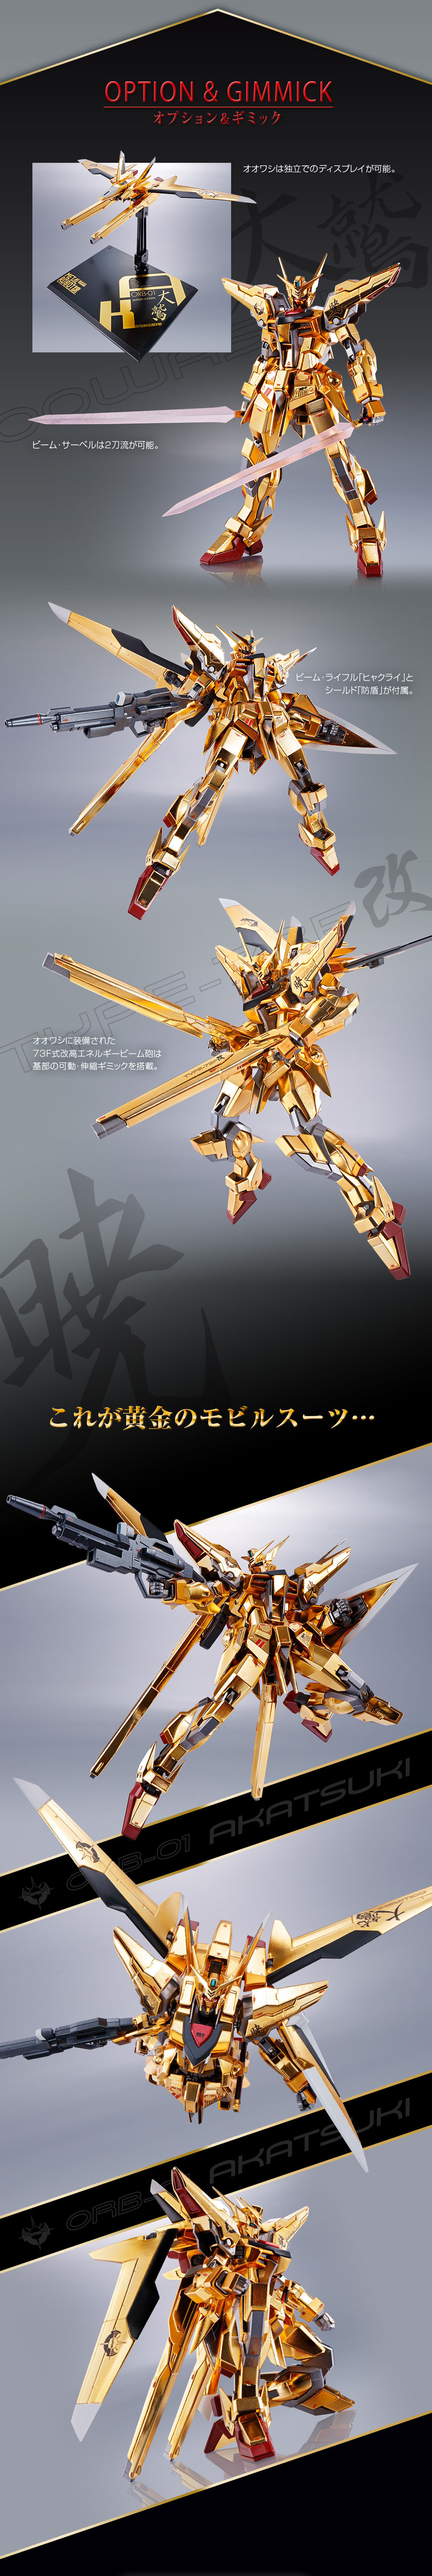 Metal Robot Spirits(Side MS) ORB-01 Akatsuki Gundam(Oowashi Unit)